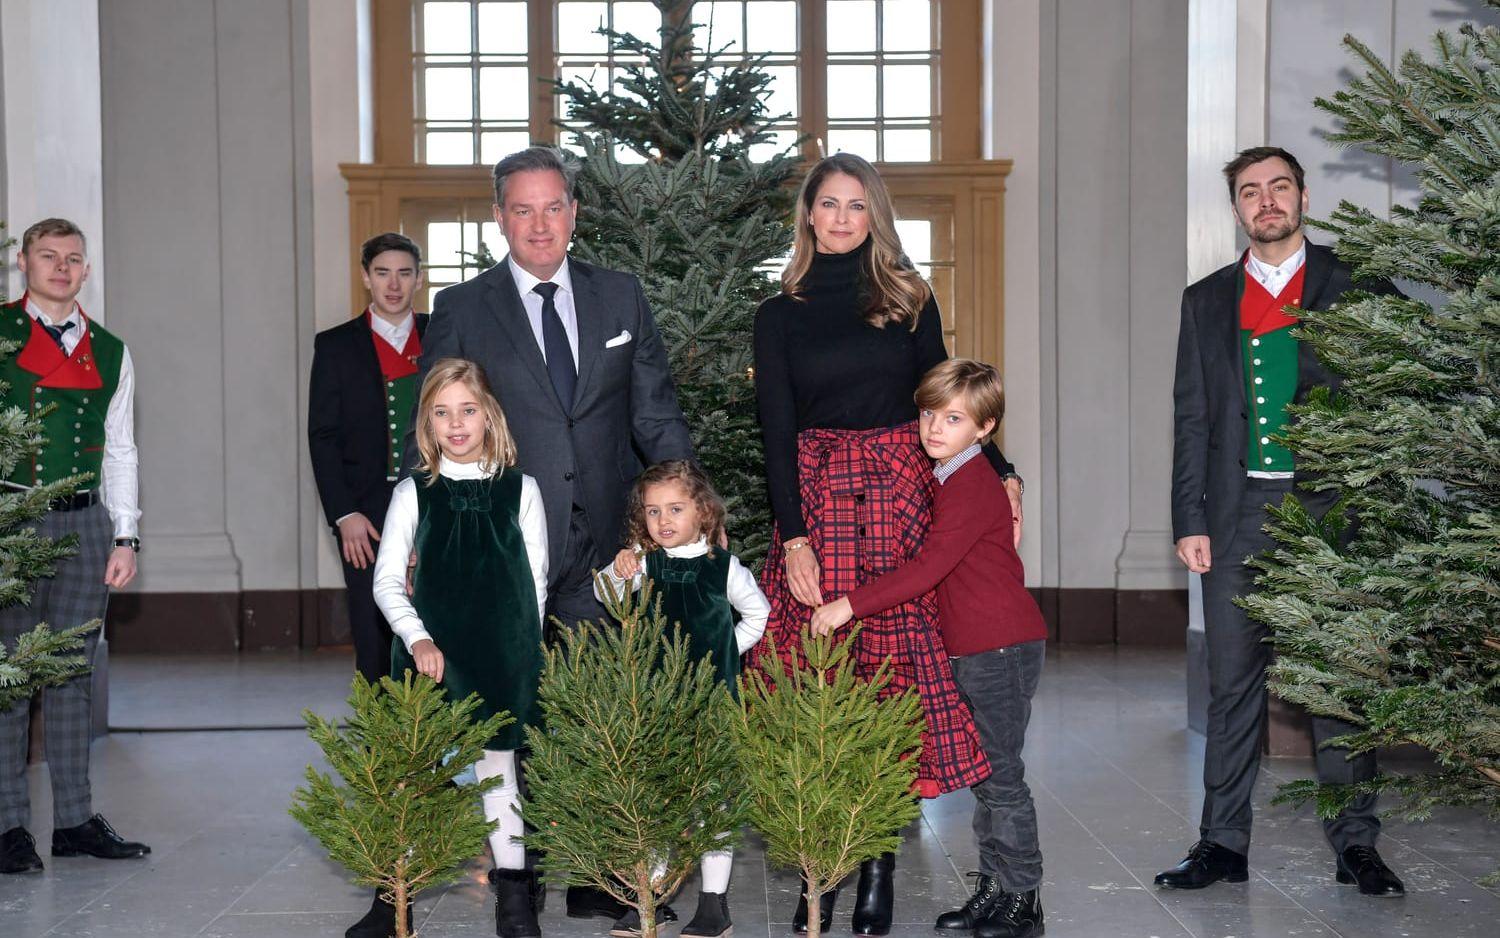 Hela familjen samlad på slottet igen. Prinsessan Madeleine, Chris O'Neill och barnen Leonore, Nicolas och Adrienne.